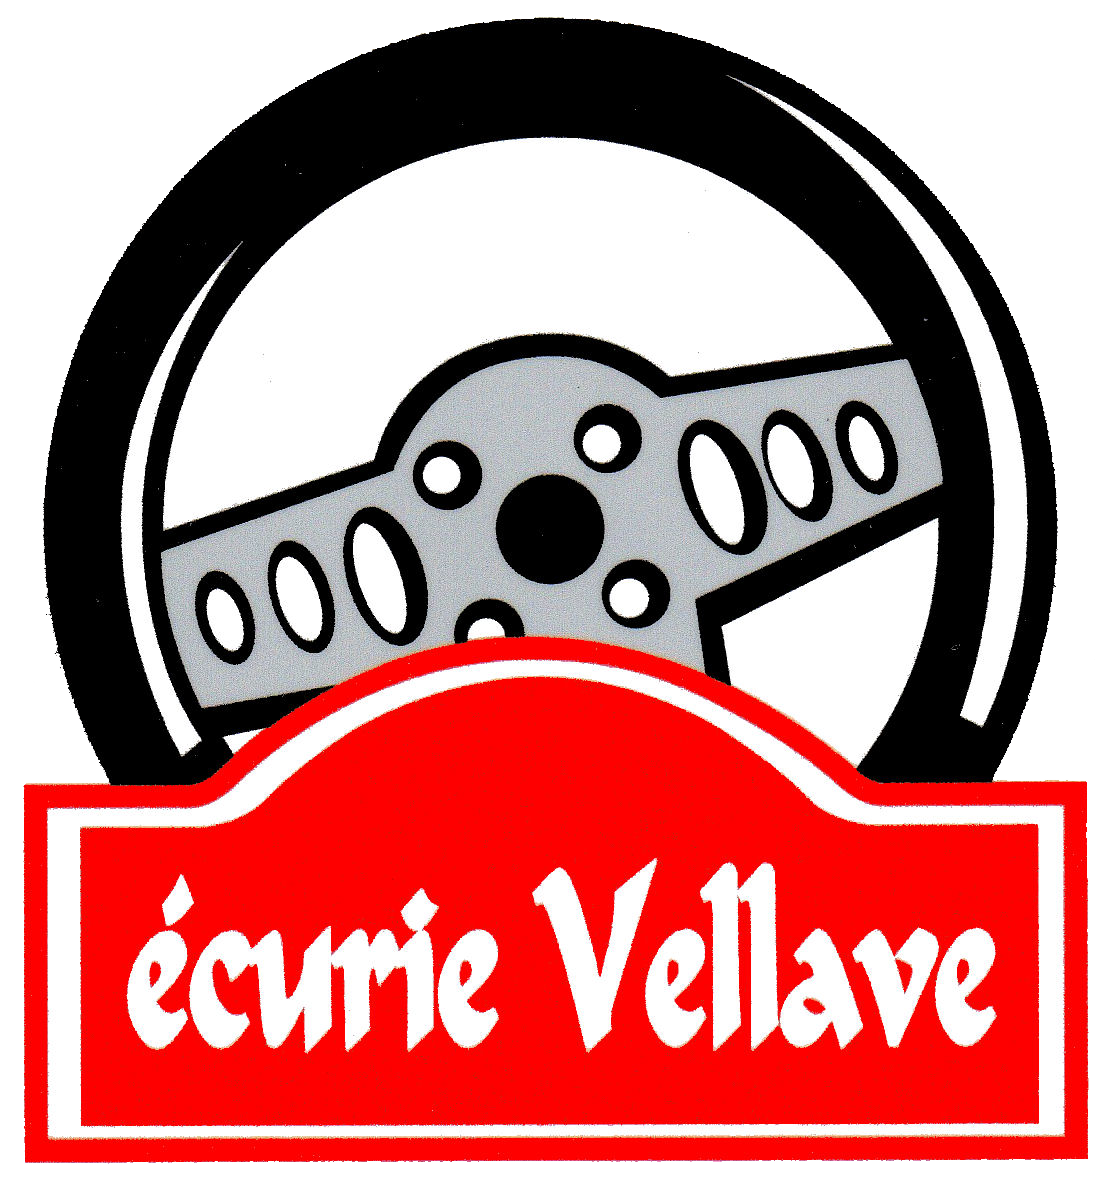 Logo Ecurie Vellave